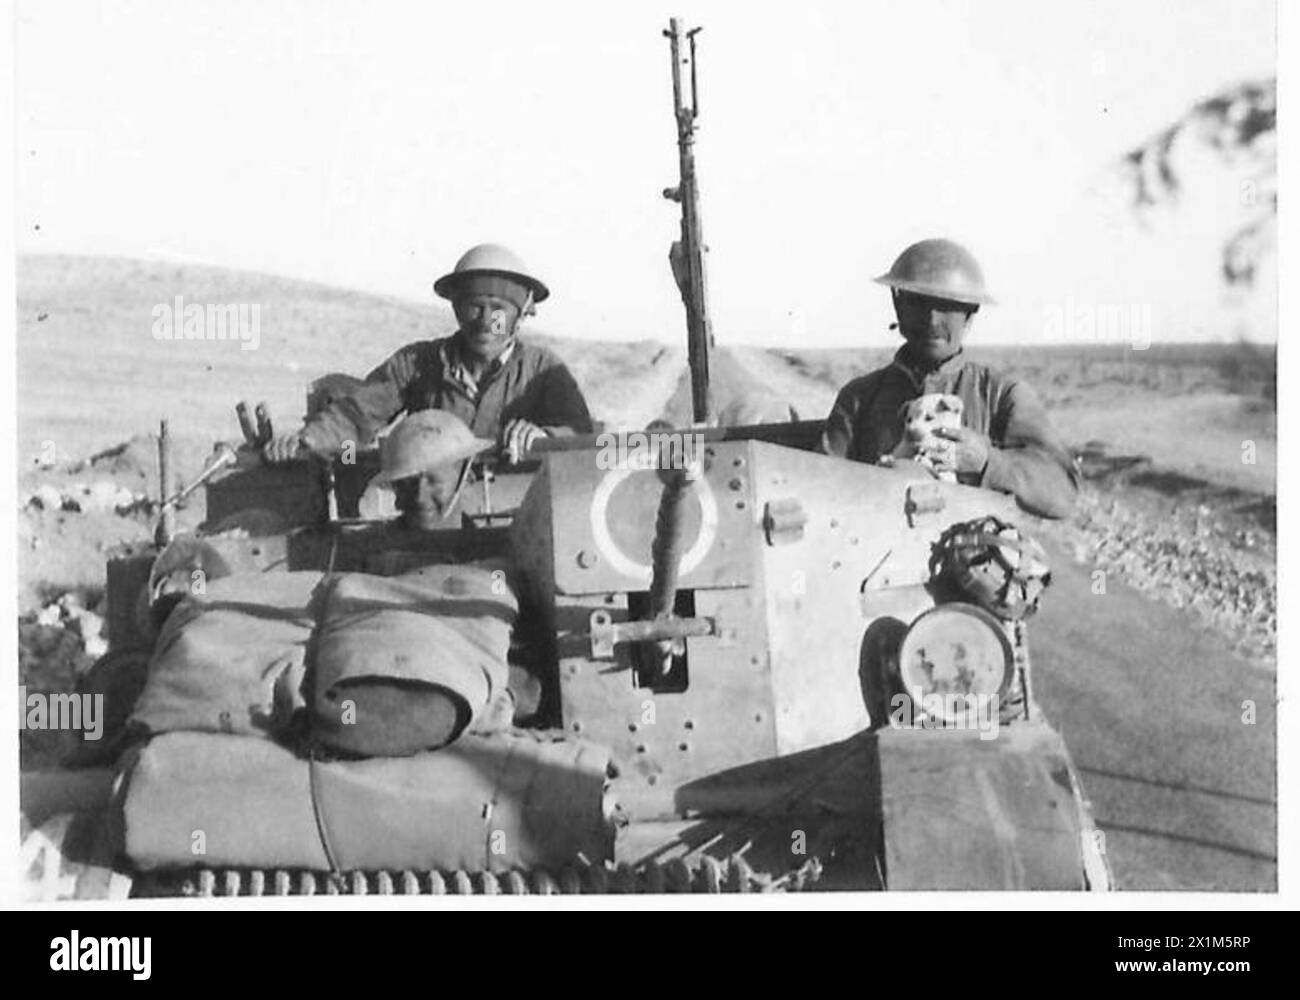 WEITERE BILDER DES BRITISCHEN VORMARSCHES IN DER westlichen WÜSTE - fröhliche Männer einer leichten mobilen Einheit mit ihrem Maskottchen, auf der Straße Tobruk-Derna, British Army Stockfoto